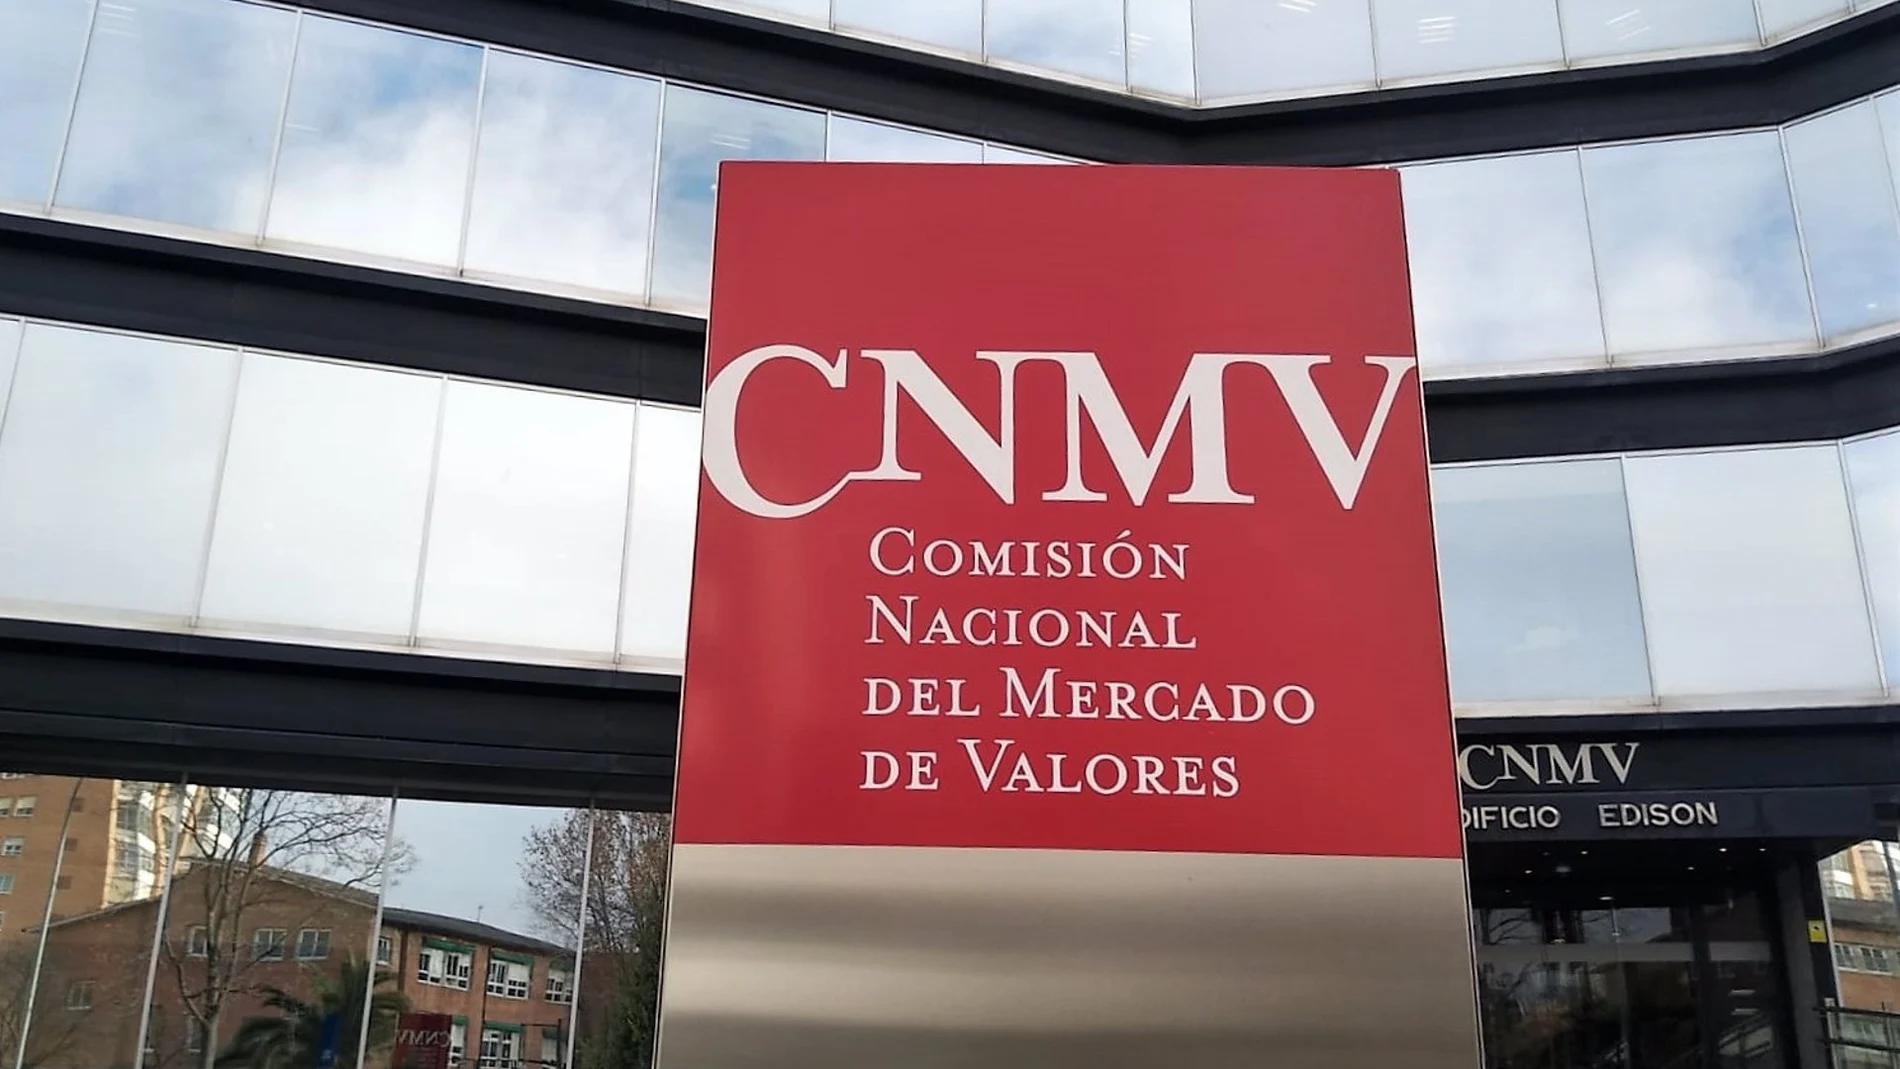 Economía/Finanzas.- La CNMV avisa de cuatro entidades no autorizadas para prestar servicios de inversión